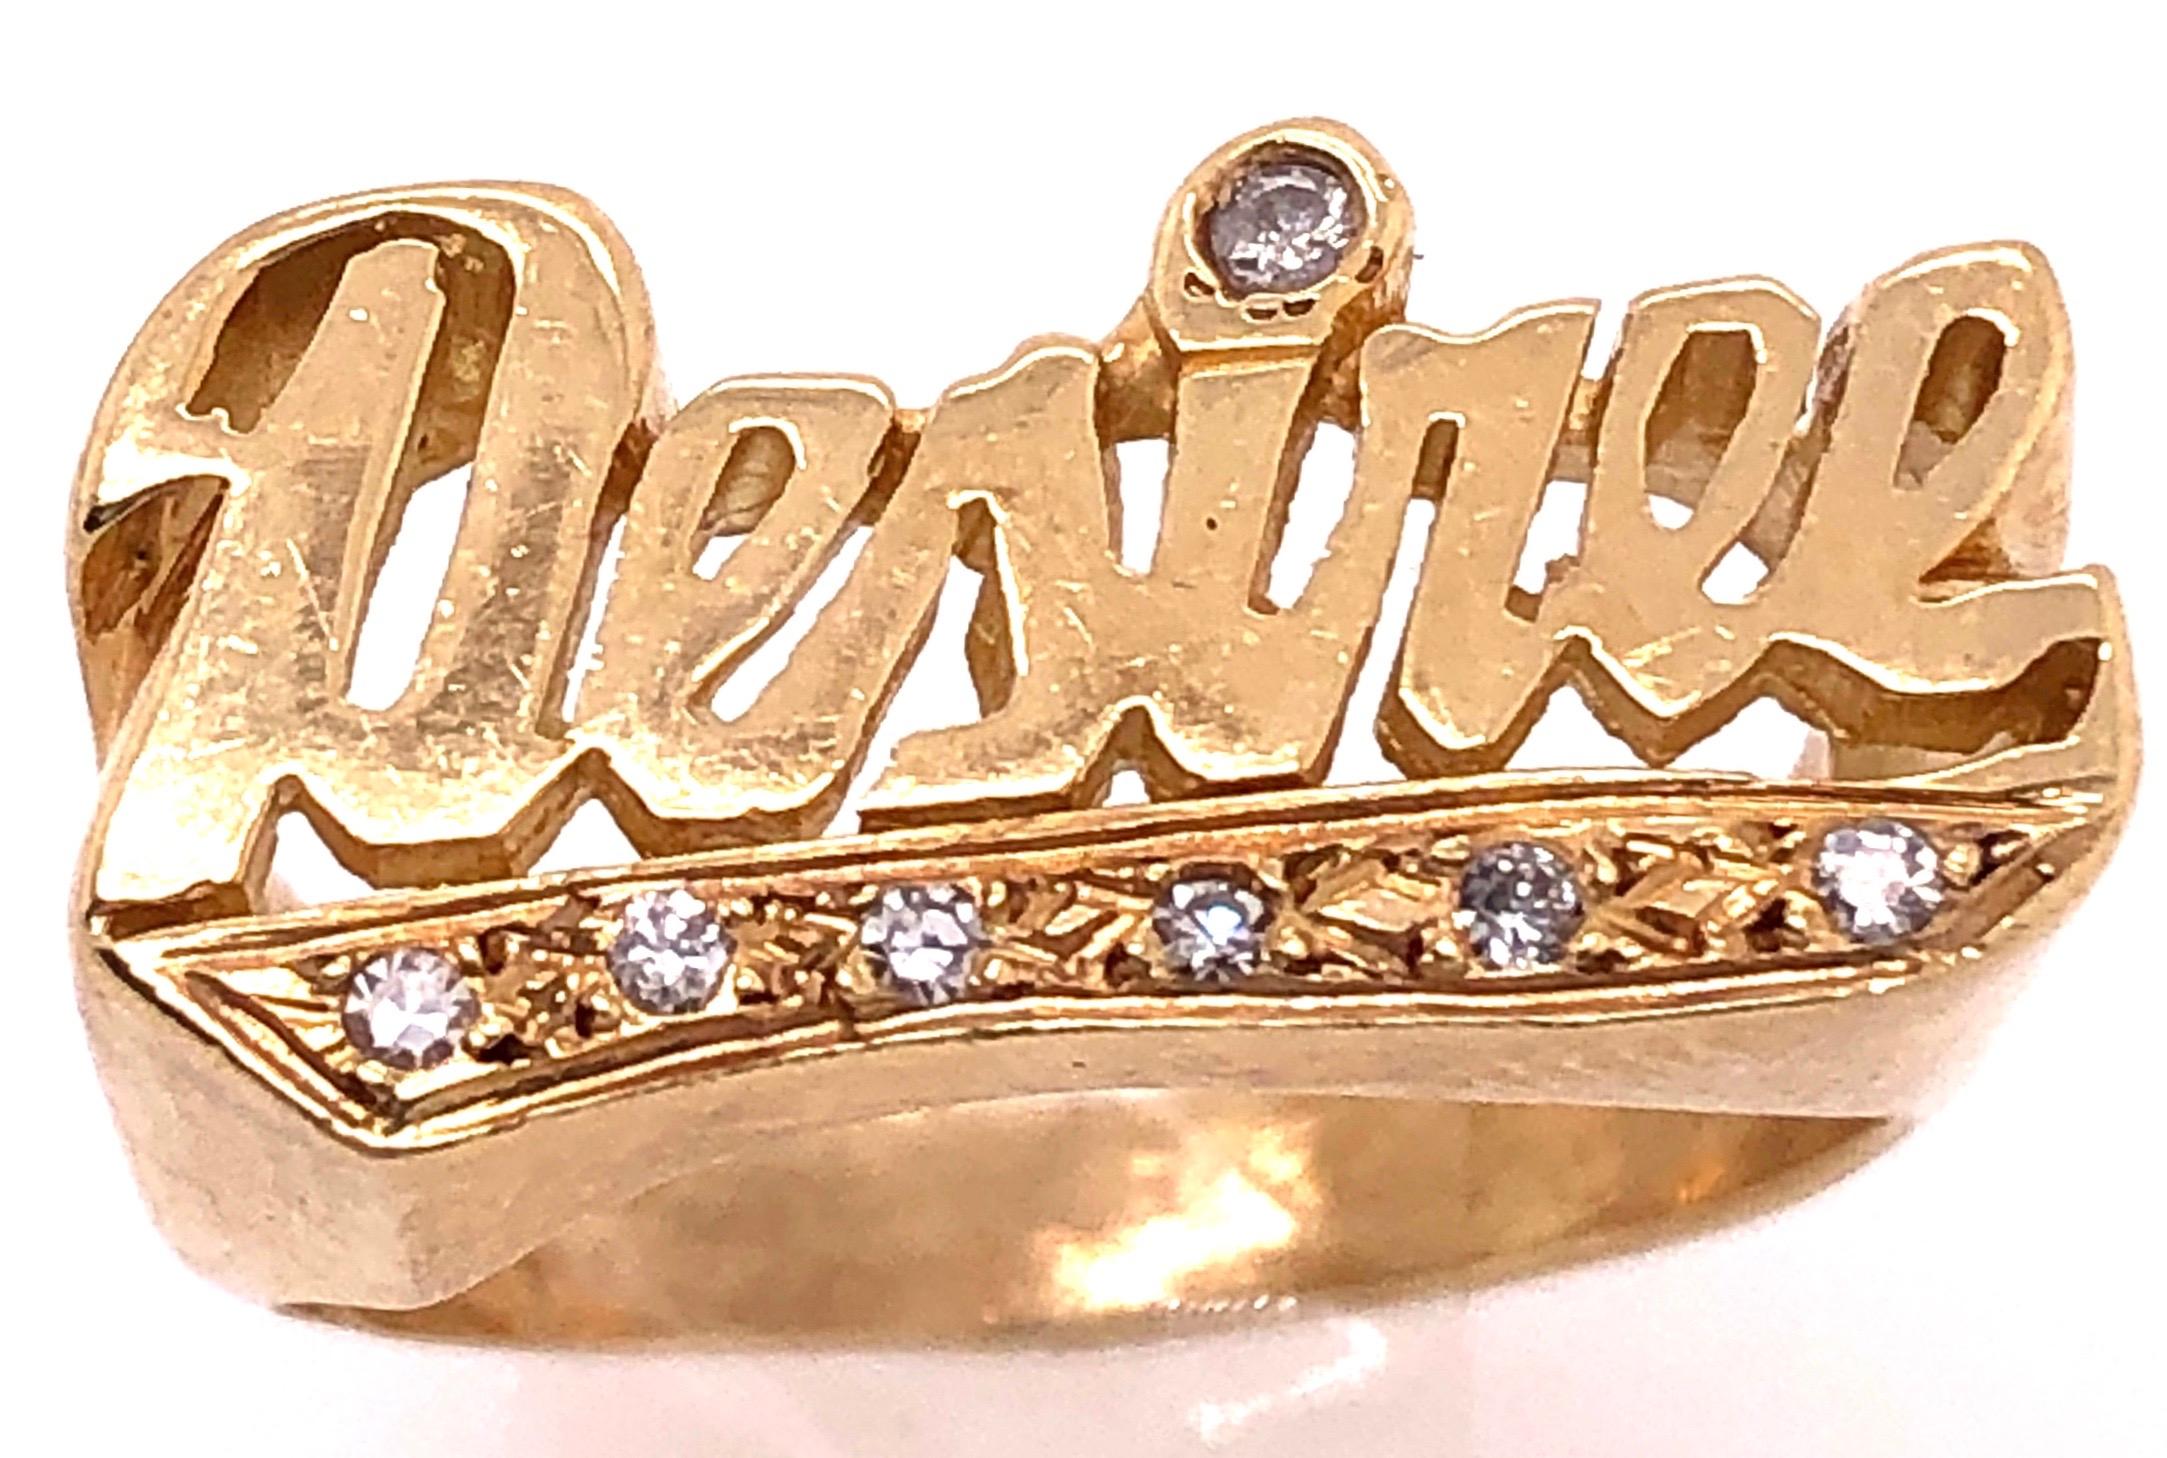 14 Karat zweifarbig Gelb und Gold Name Style/Desiree Ring mit Diamanten.
6 Stück runde Diamanten.
Größe 7
6 Gramm Gesamtgewicht.